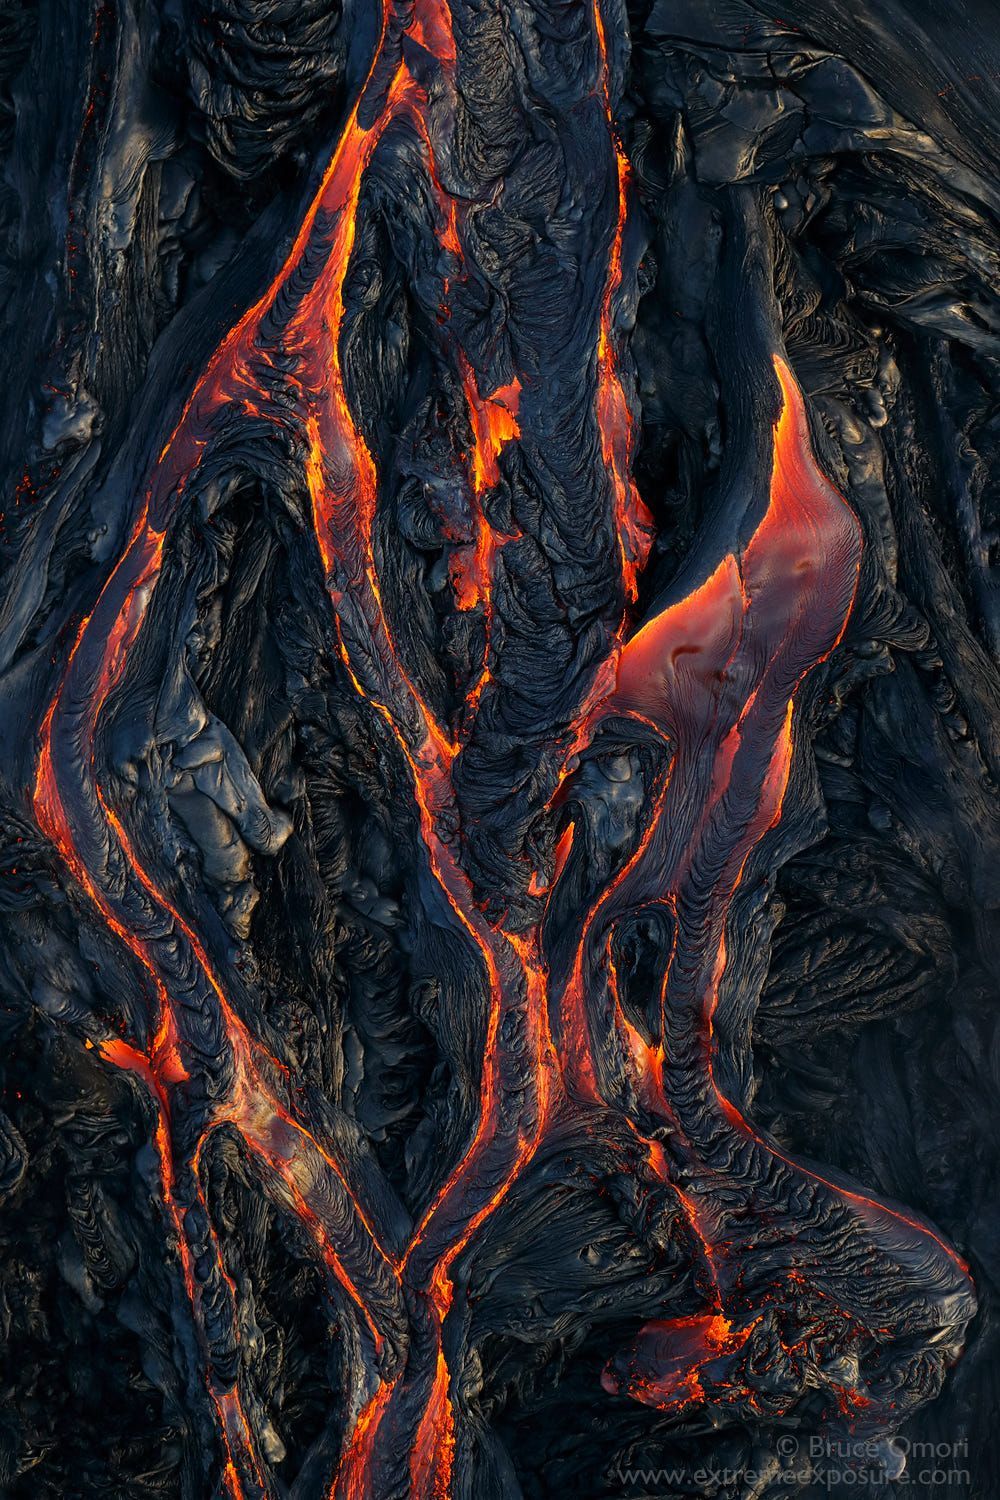  جدیدترین و ترسناک ترین تصاویر هنری از لاوا بیرون زده از آتشفشان های واقعی